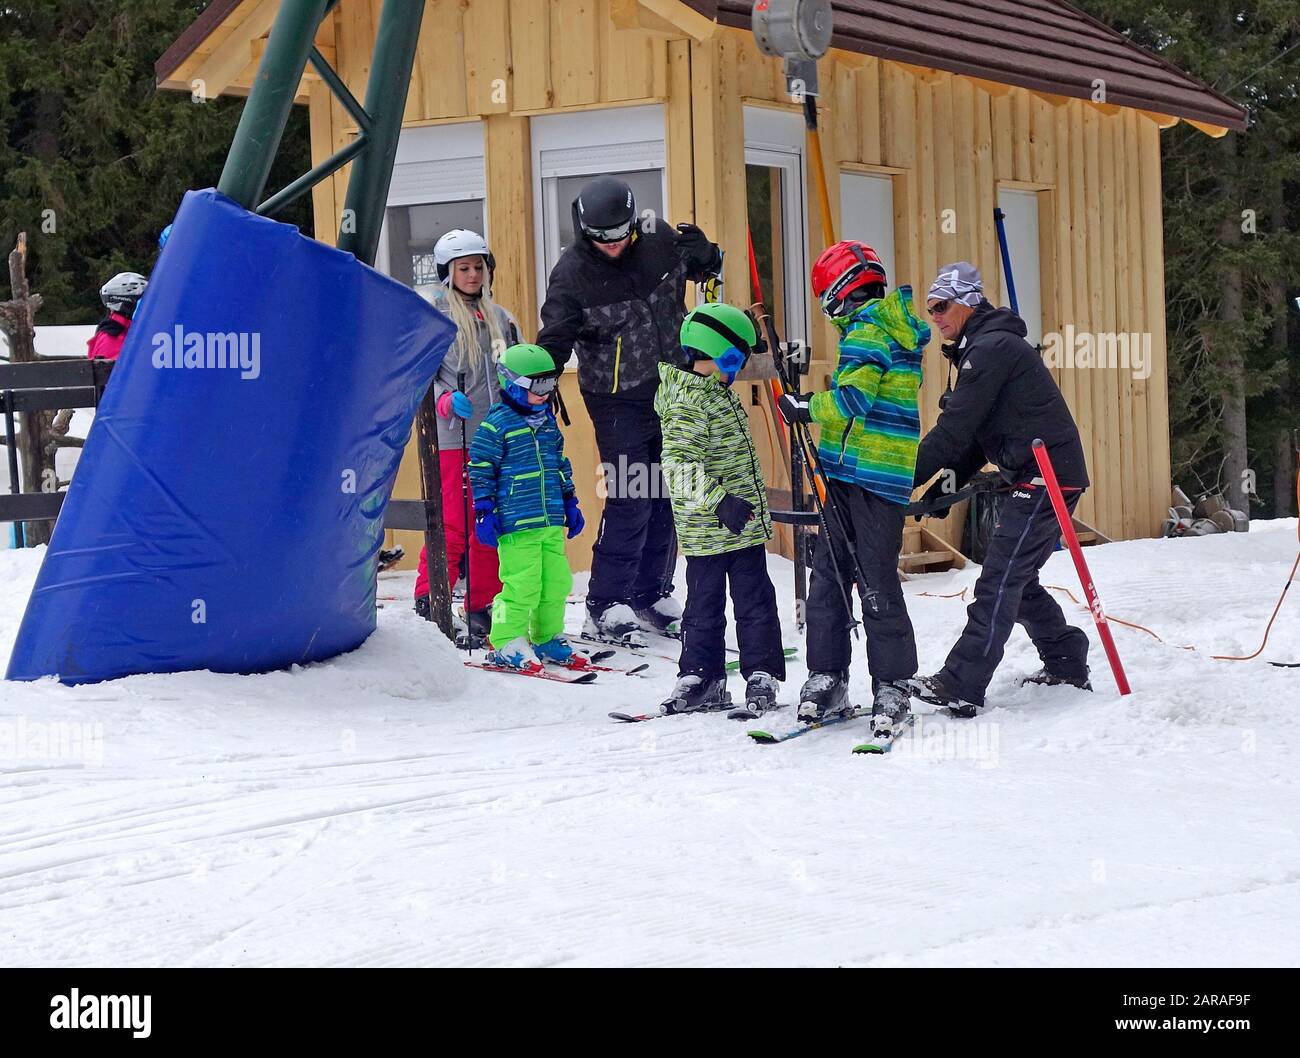 Los esquiadores de niños reciben ayuda de un asistente en el telesilla de superficie del T-bar. Estación de esquí Rogla, Eslovenia. Foto de stock